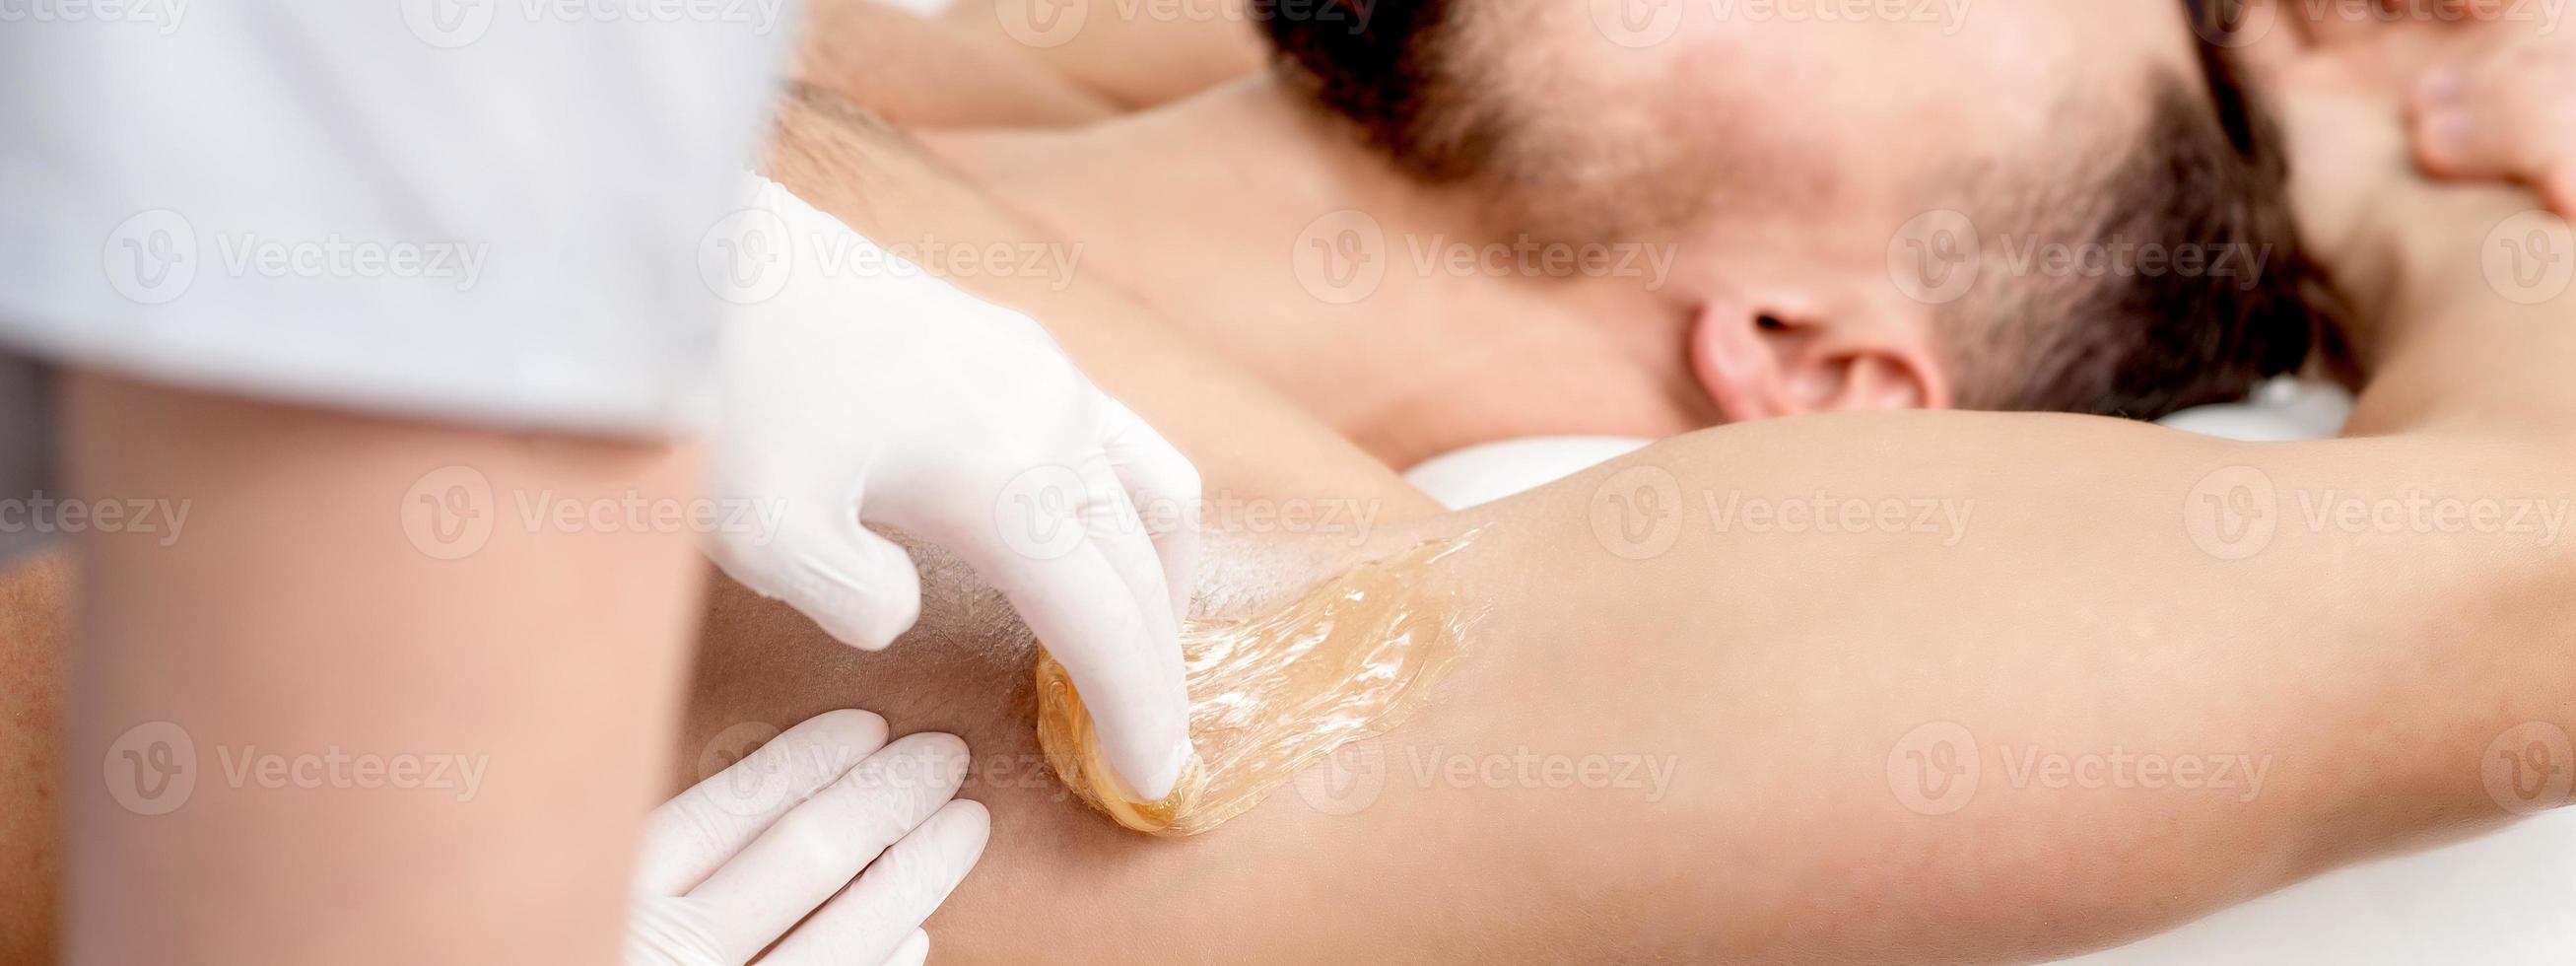 kosmetologe, der wachspaste auf männliche achselhöhle aufträgt foto